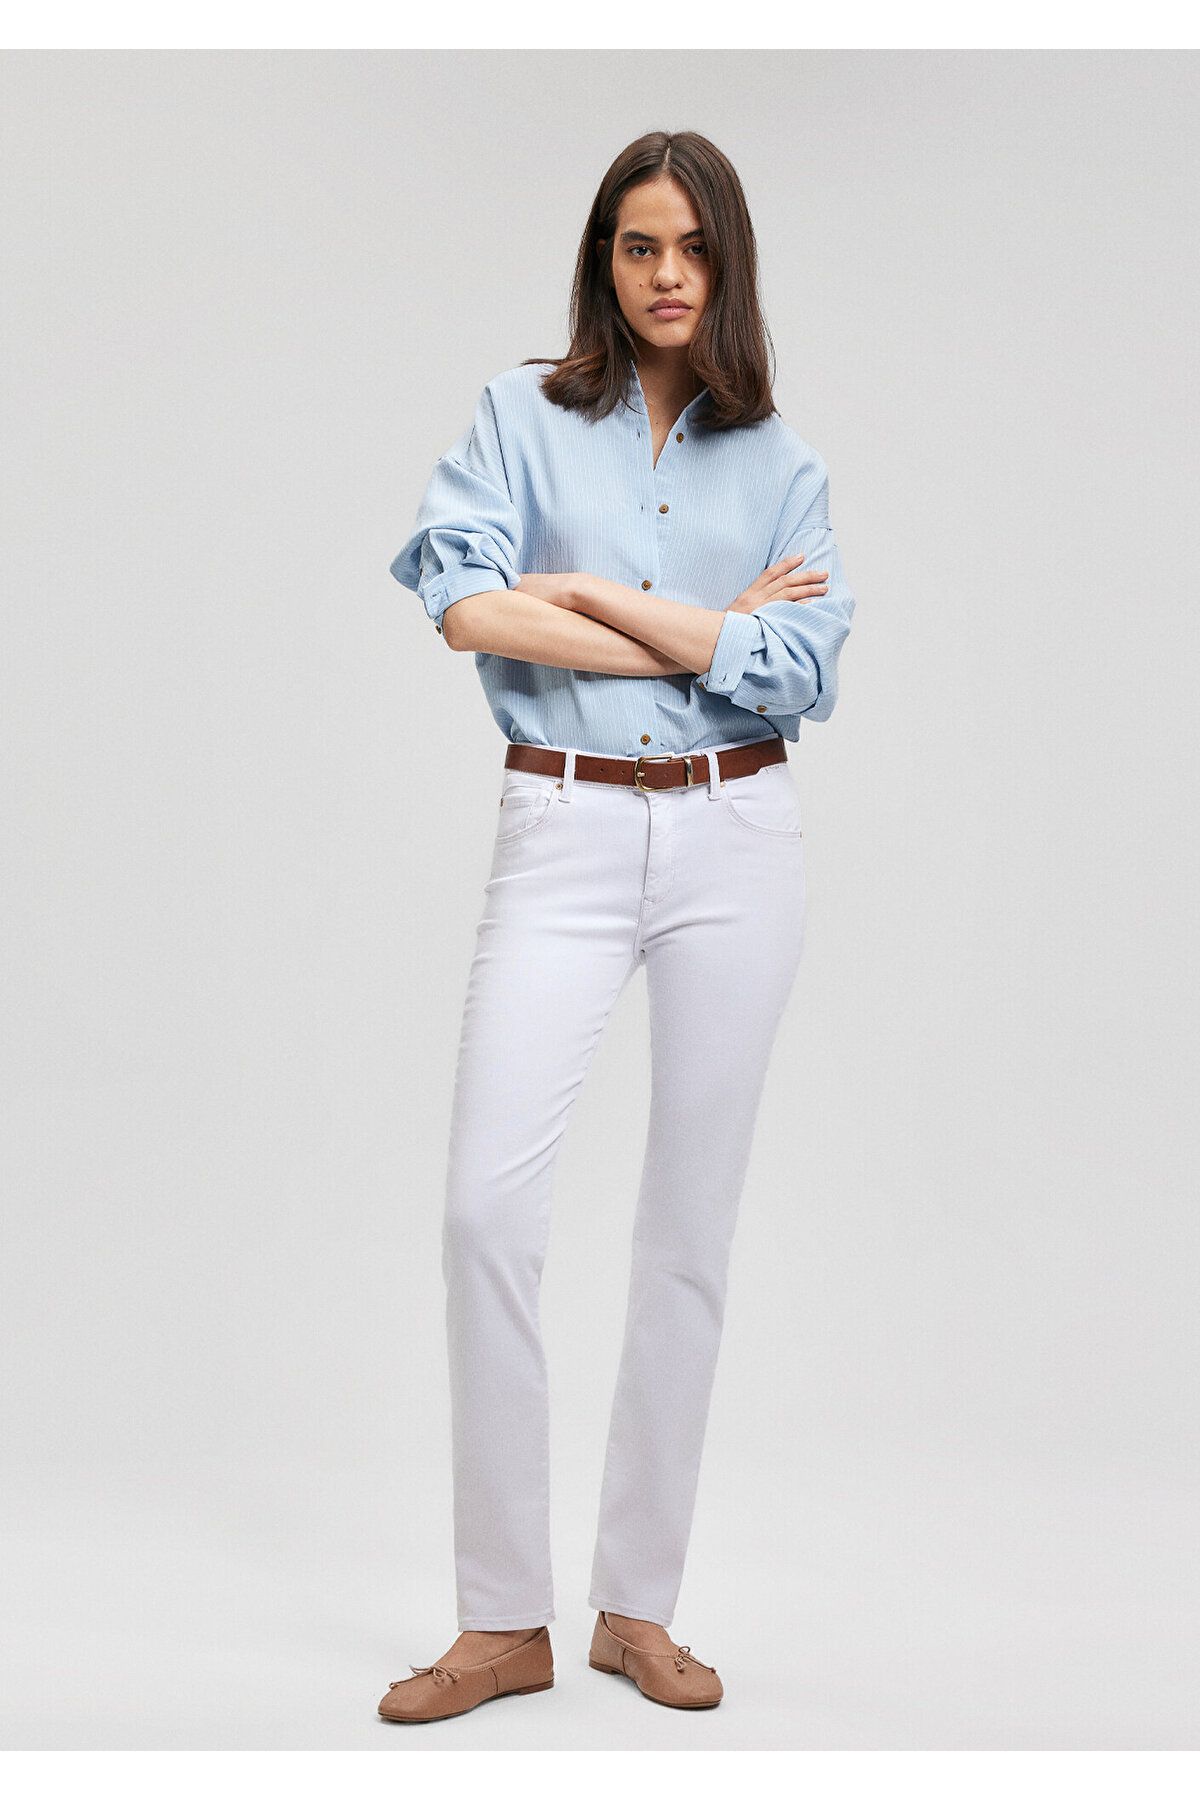 Mavi Kendra Gold Premium Beyaz Jean Pantolon 1074686459